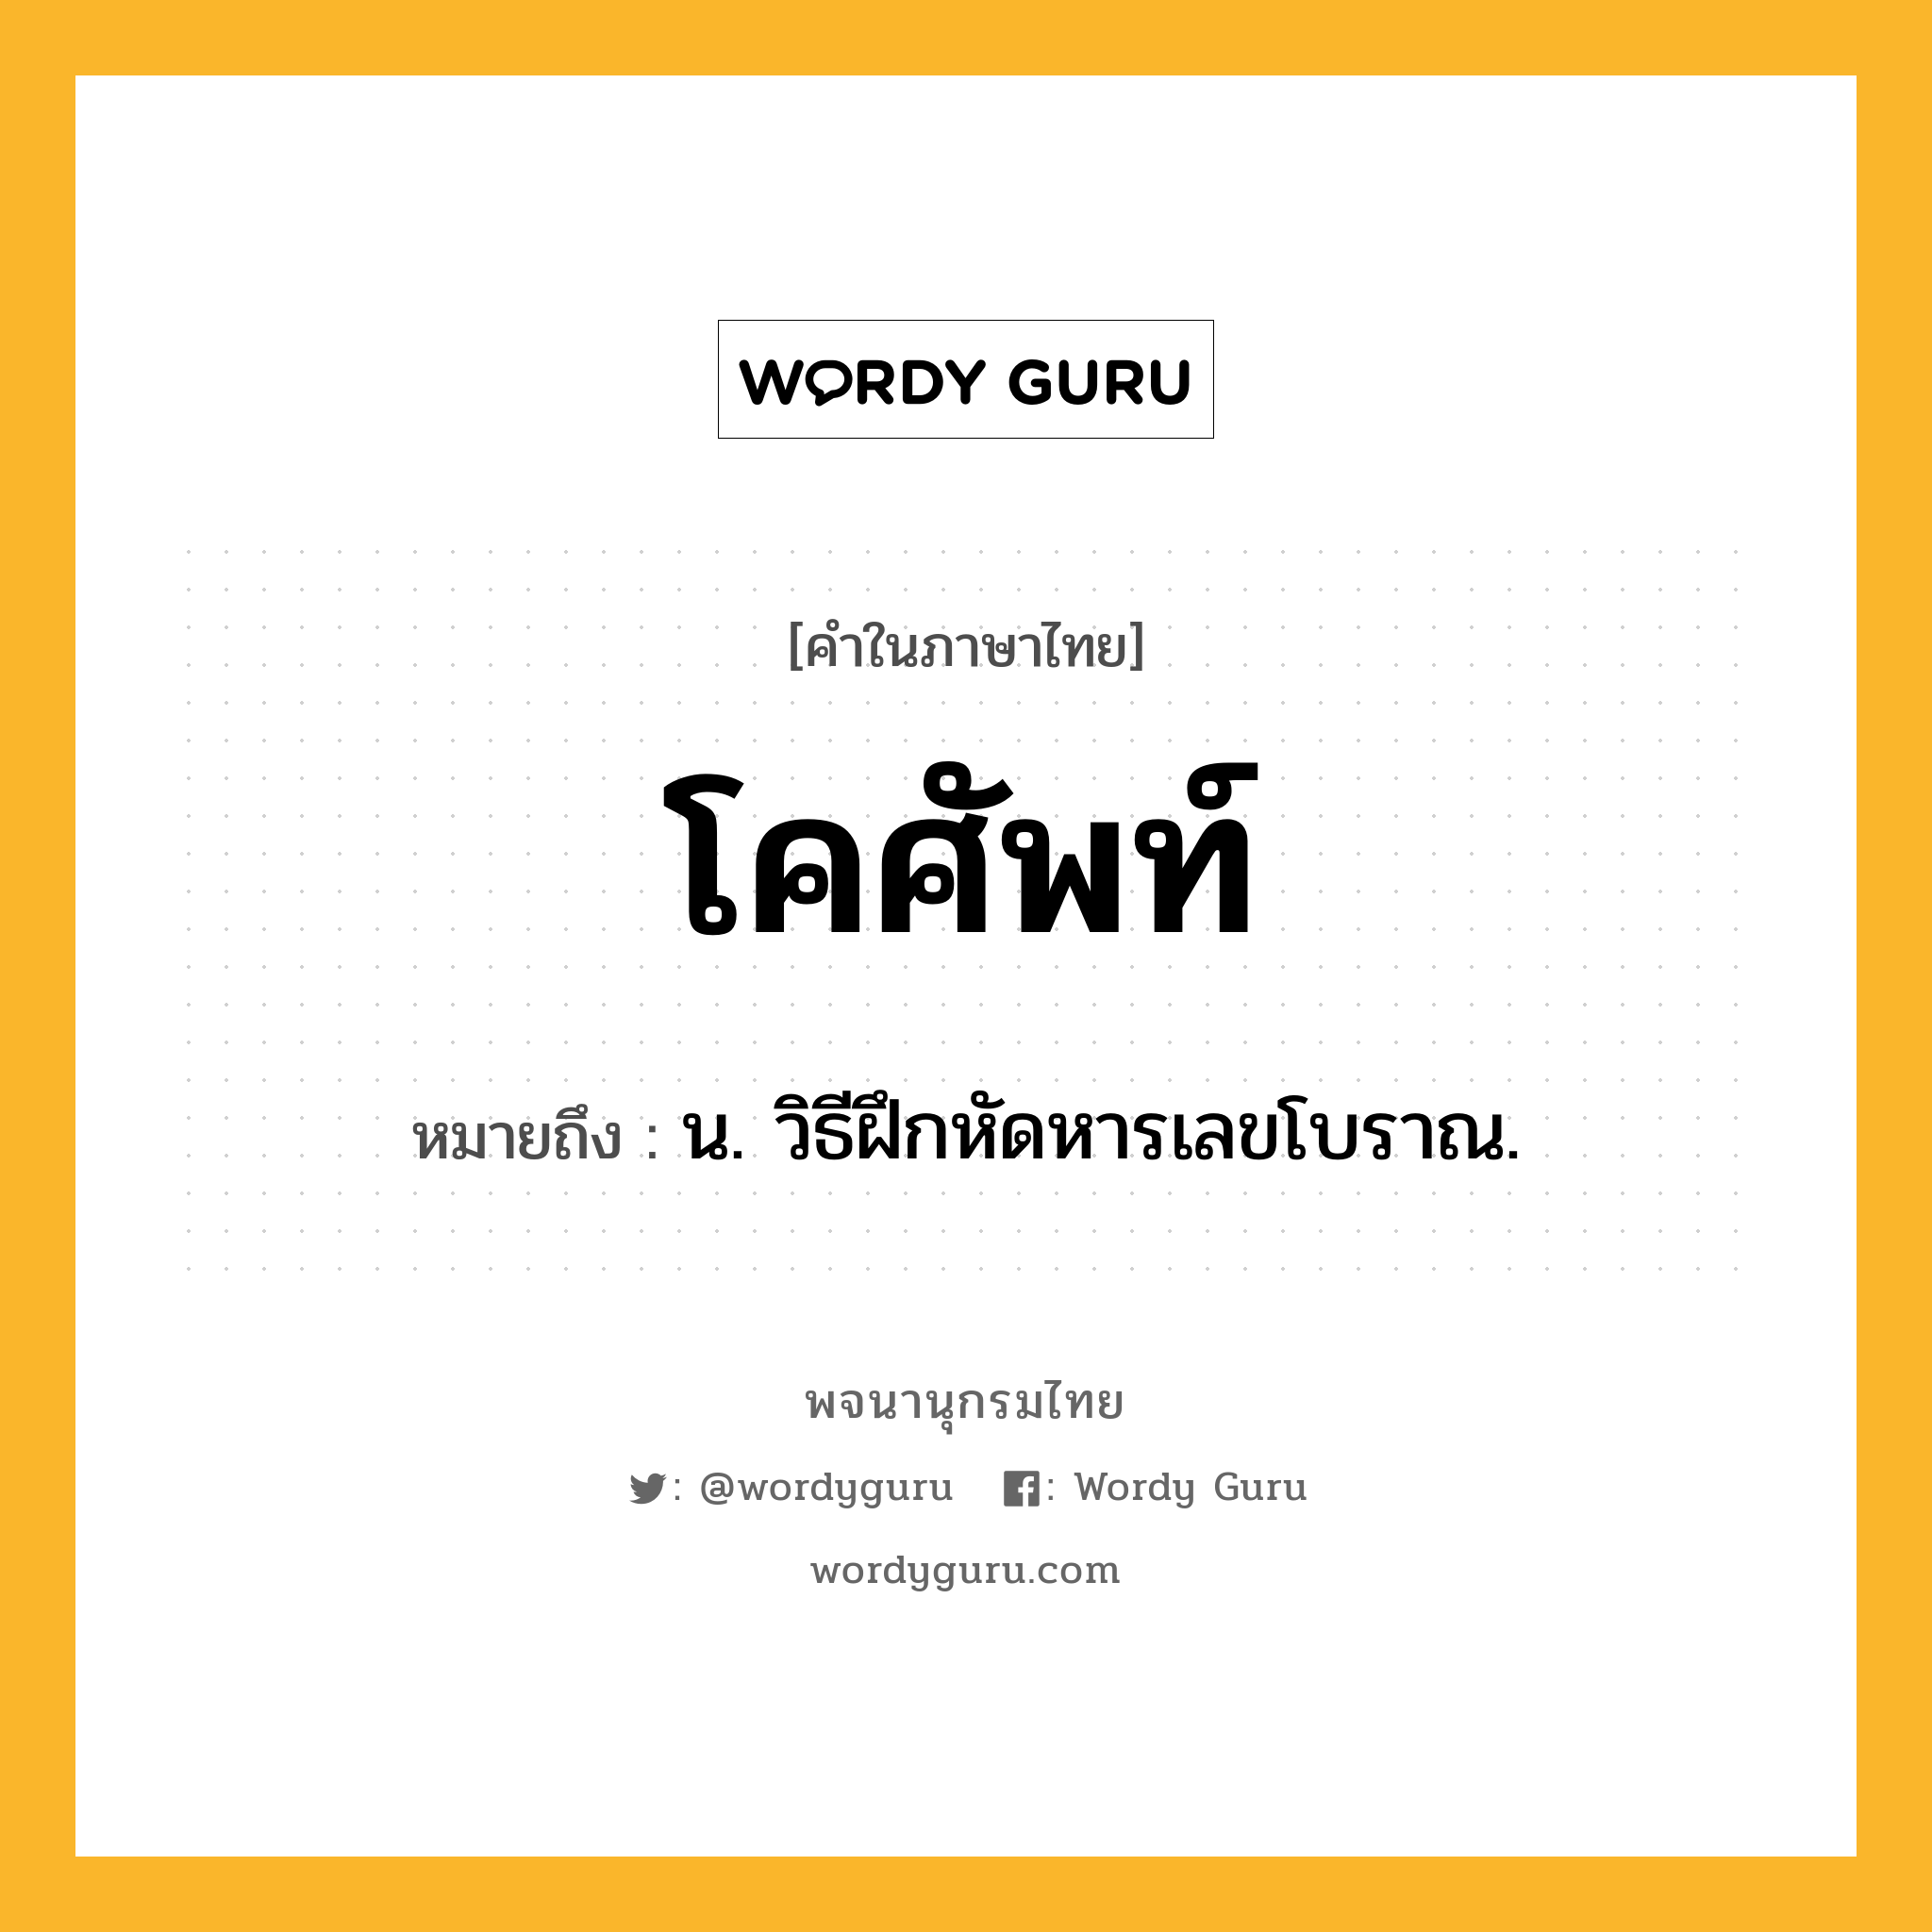 โคศัพท์ หมายถึงอะไร?, คำในภาษาไทย โคศัพท์ หมายถึง น. วิธีฝึกหัดหารเลขโบราณ.